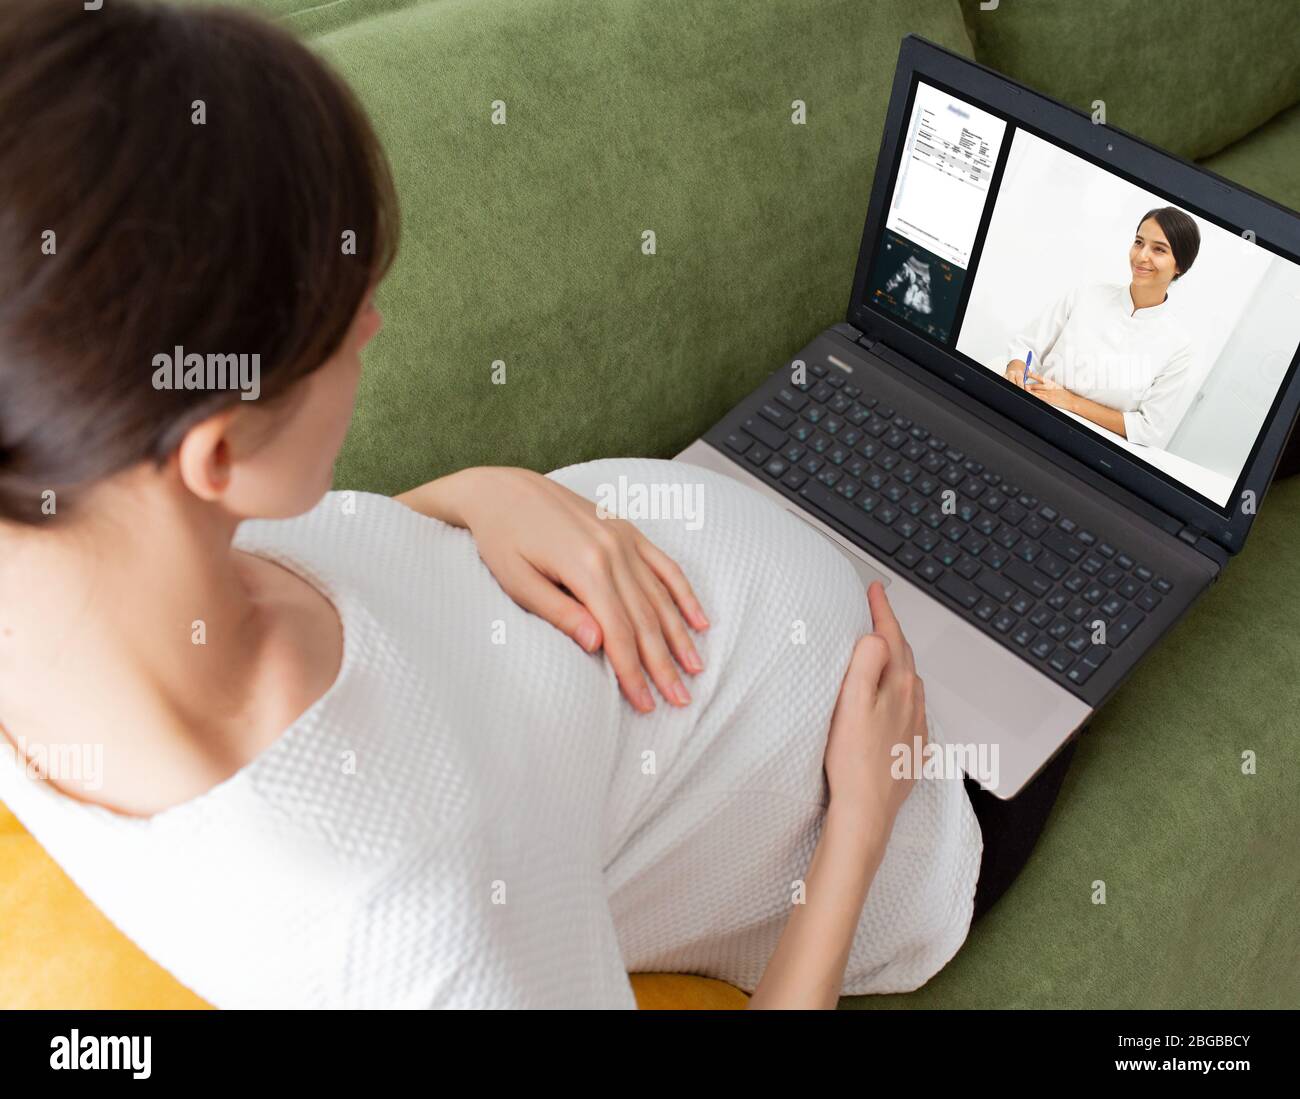 Femme enceinte ayant une consultation en ligne avec son gynécologue. le médecin explique le résultat de l'analyse à sa patiente en utilisant le chat vidéo. Reste à la maison Banque D'Images